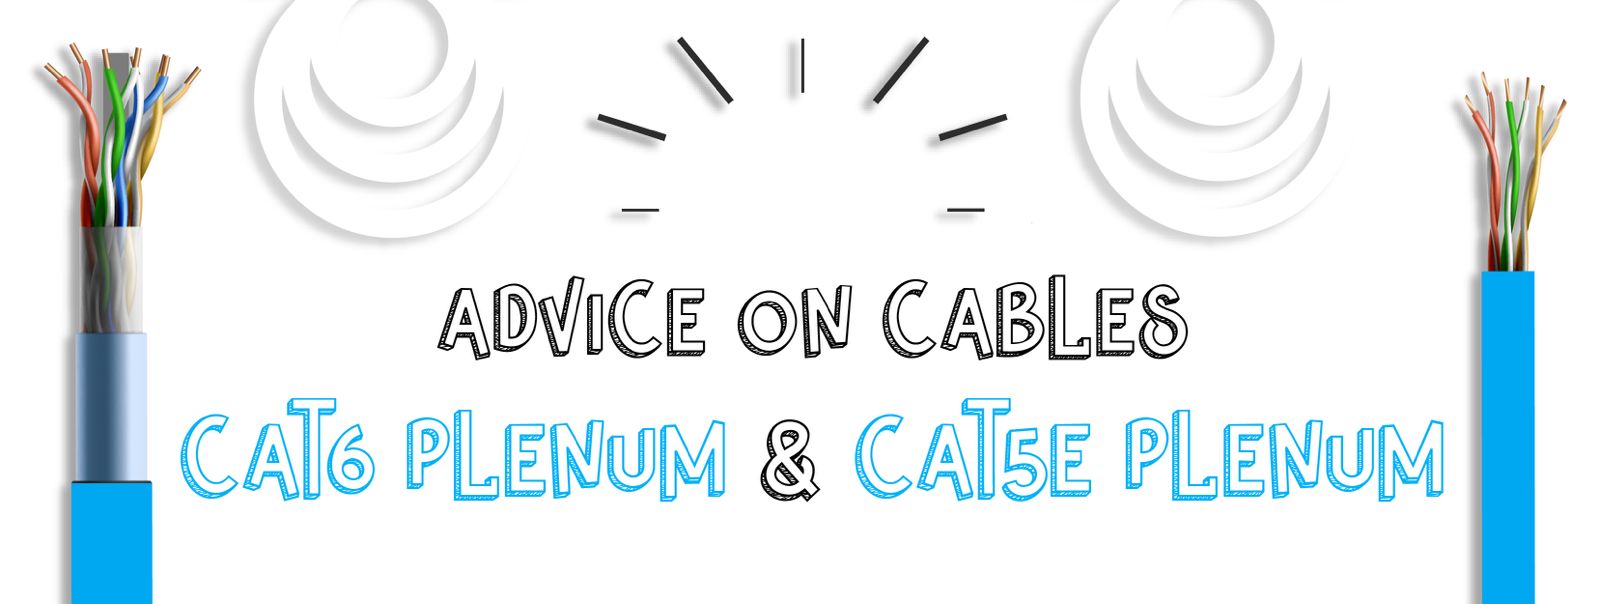 Cat6-Plenum-Cable